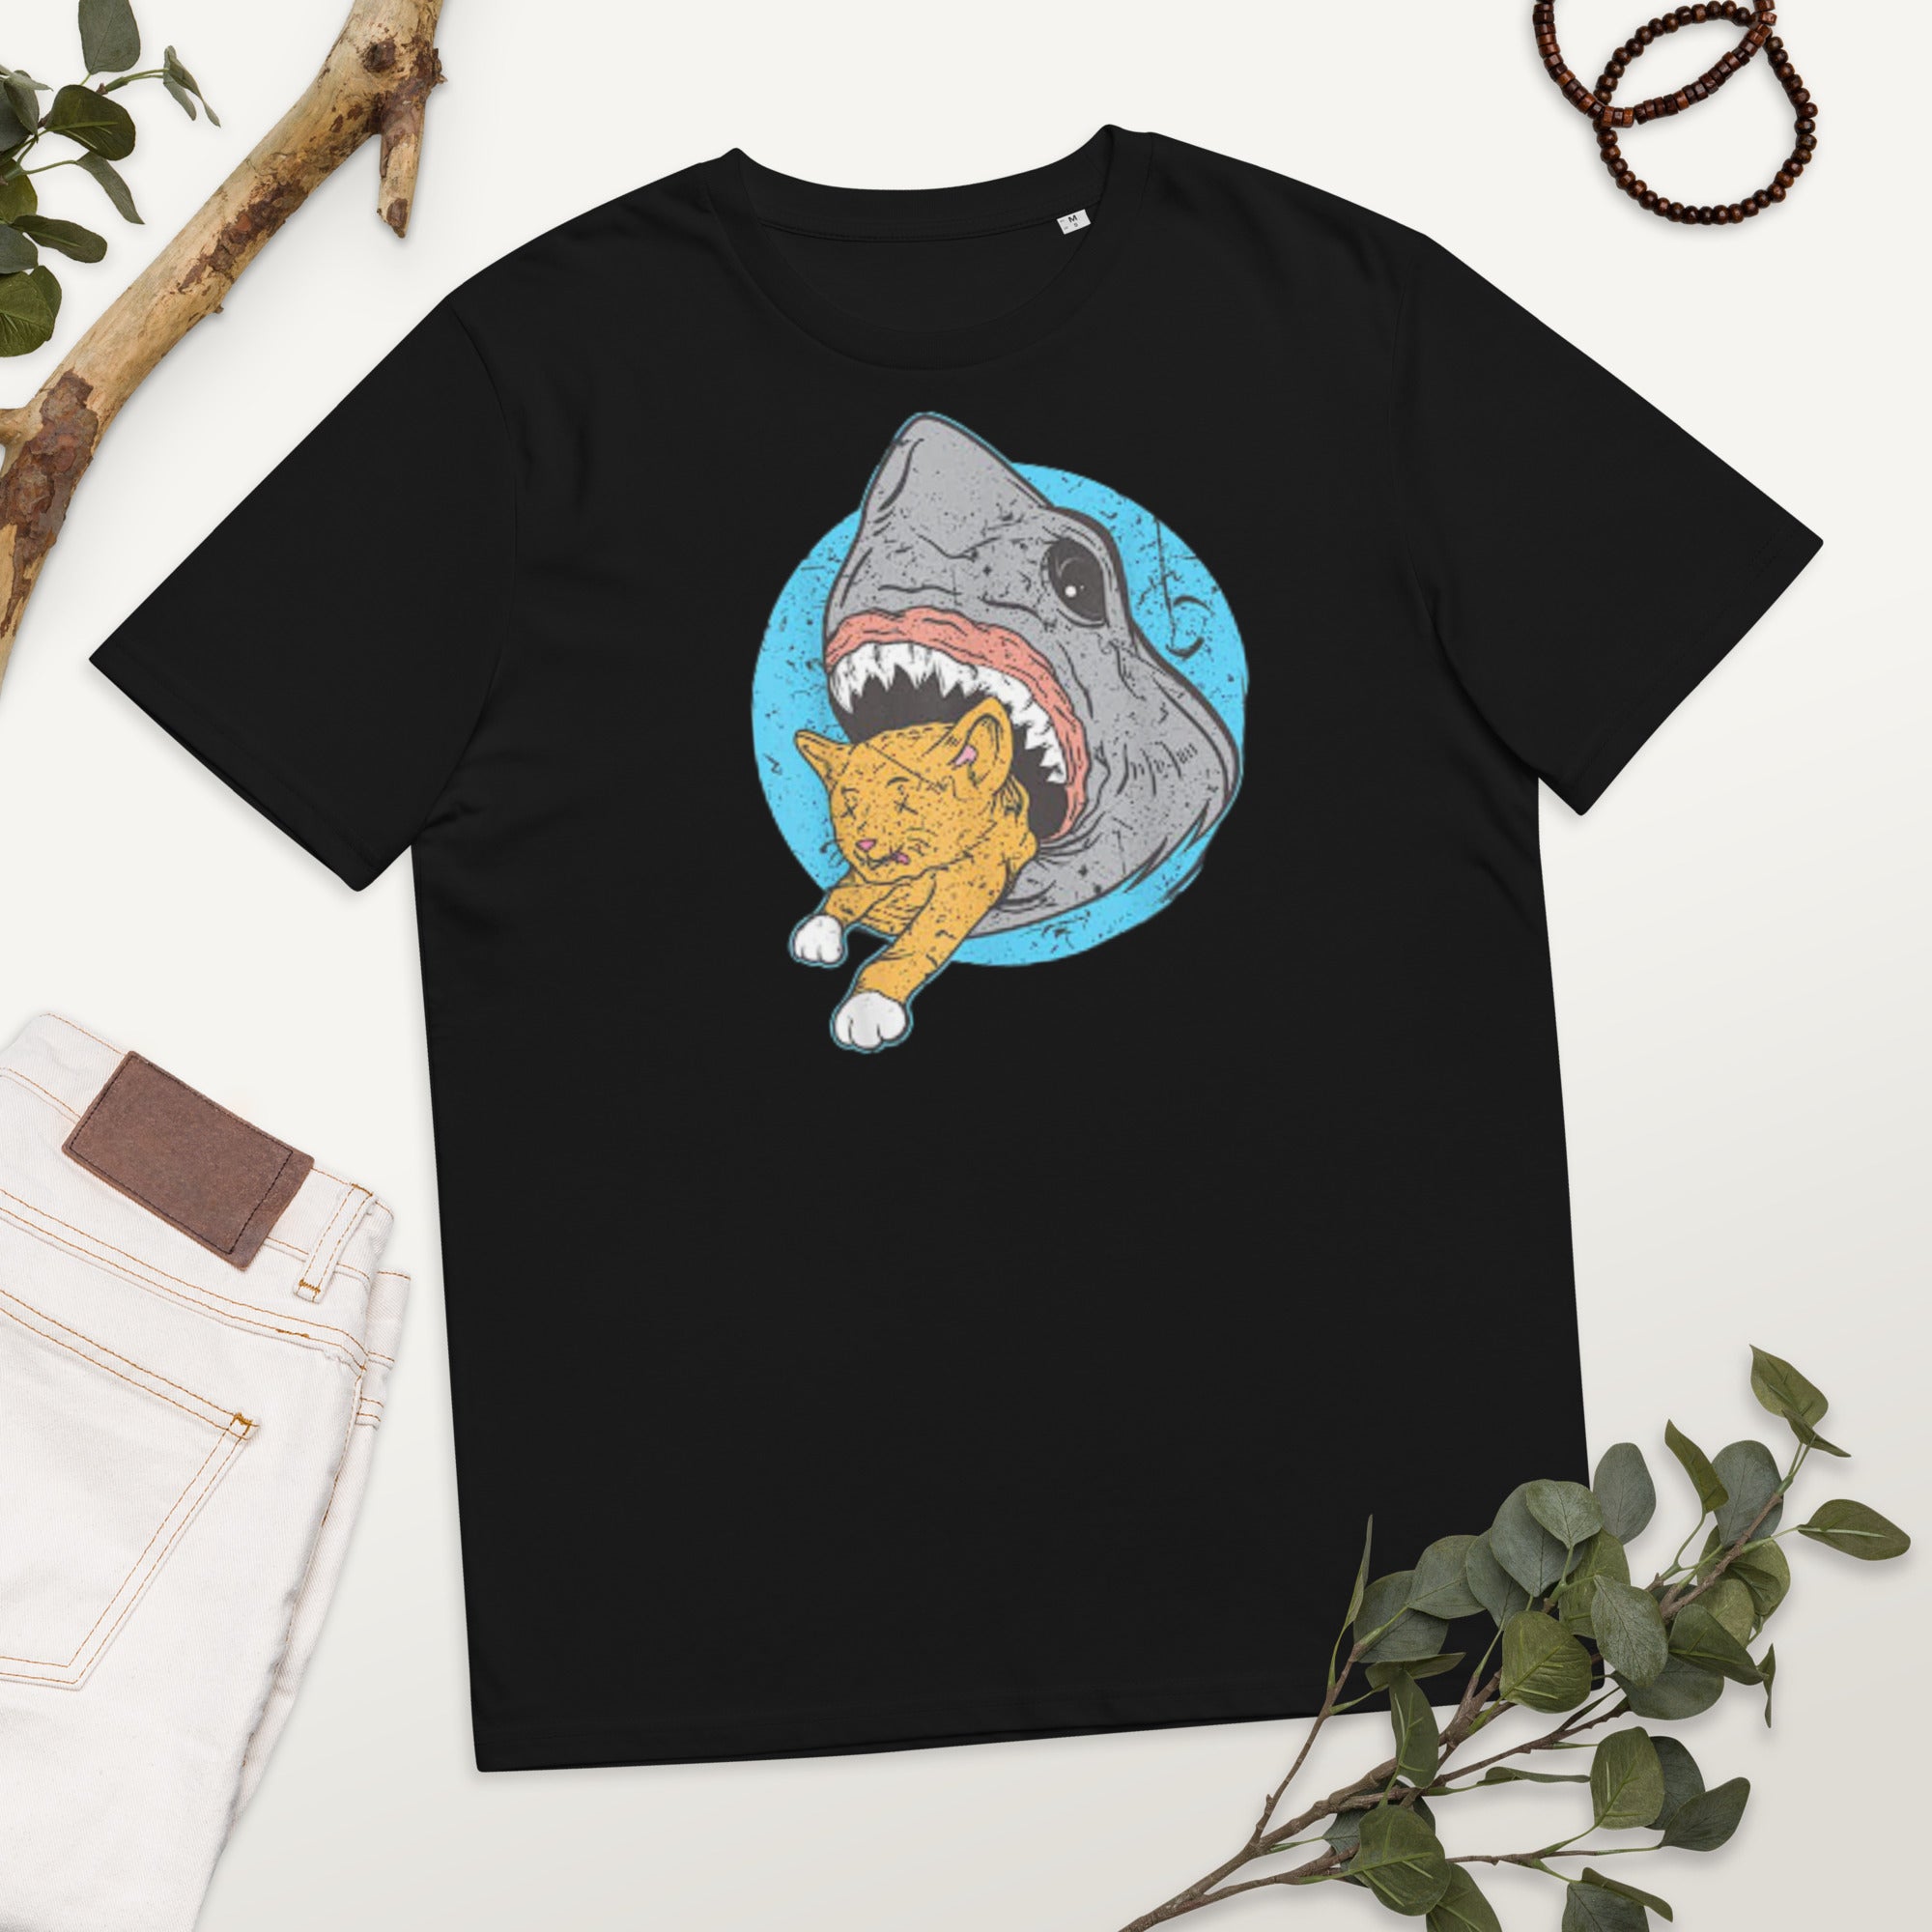 Shark Eating cat shirt